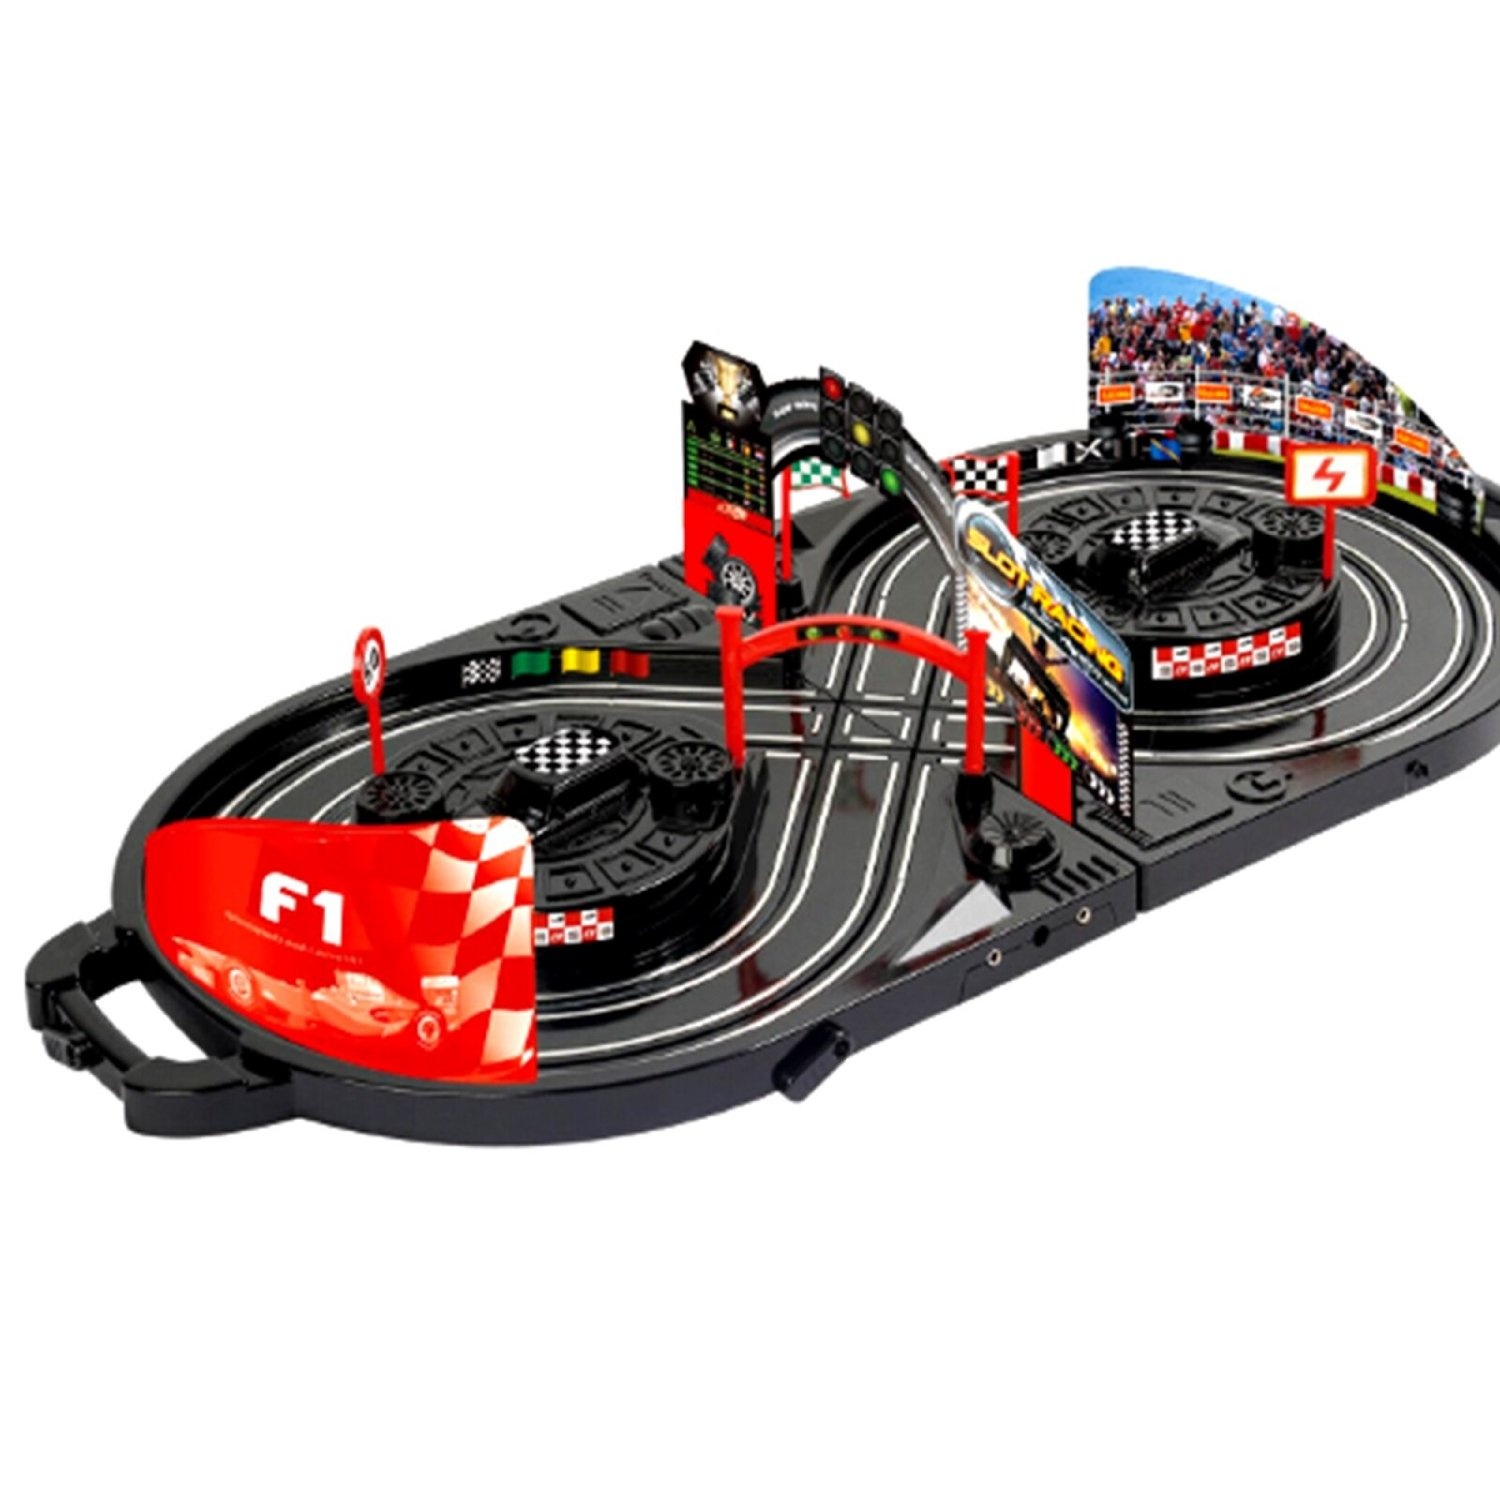 Можно 1 трек. Трек Yako y255385 Slot Racing. Автотрек гоночный Toys as331. Автотрек р/у Slot Racing. Трек Shenzhen Toys Slot track Racing 61-2.